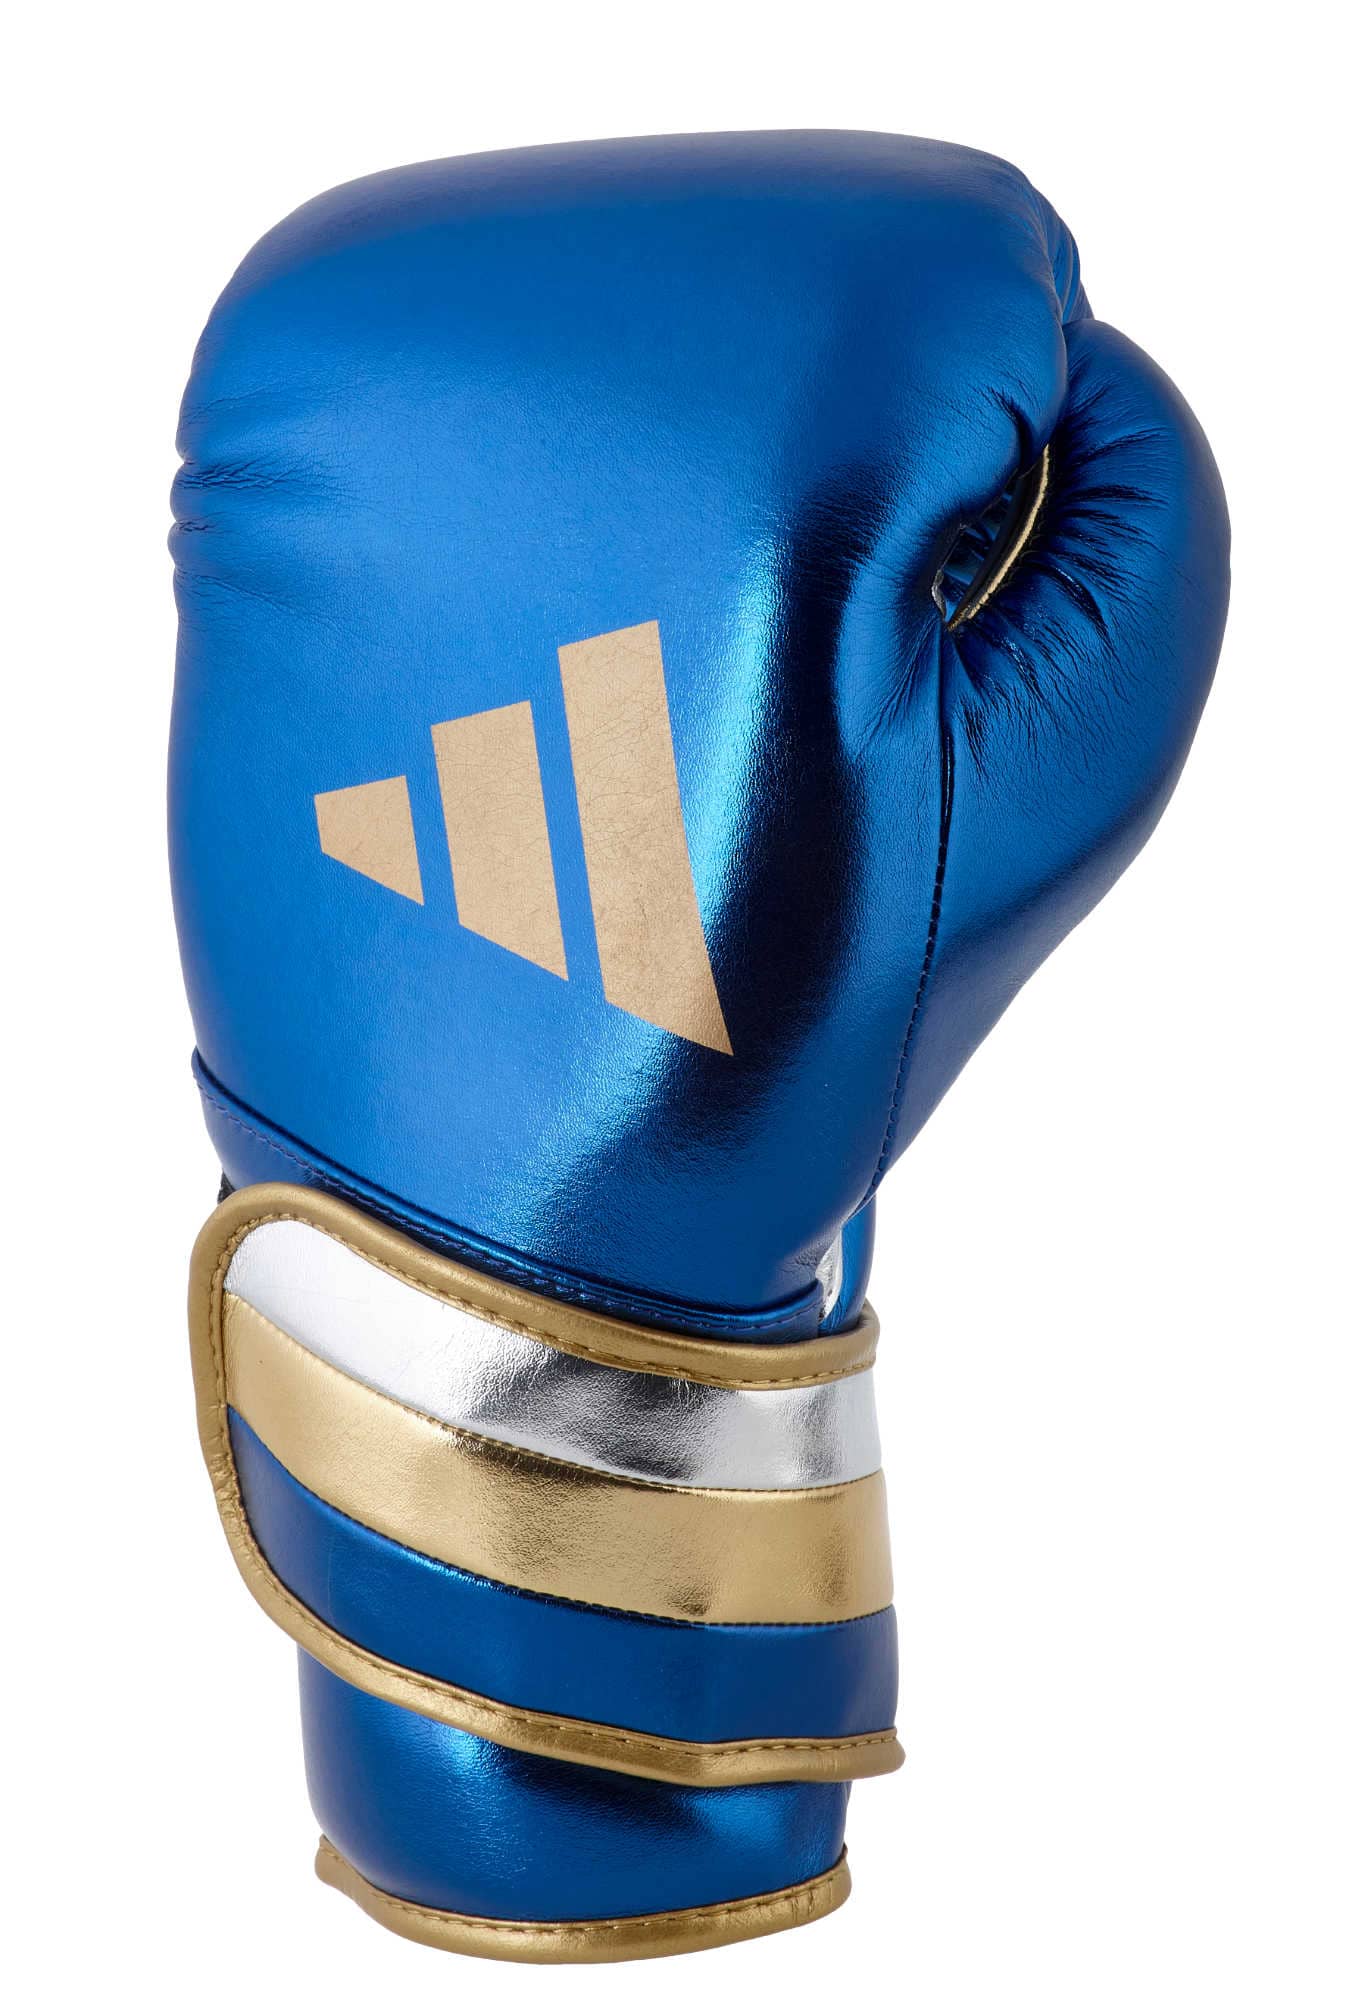 Boxhandschuhe SPEED Adidas kaufen Blau/Gold 500 ✓ | EMPAROR Online